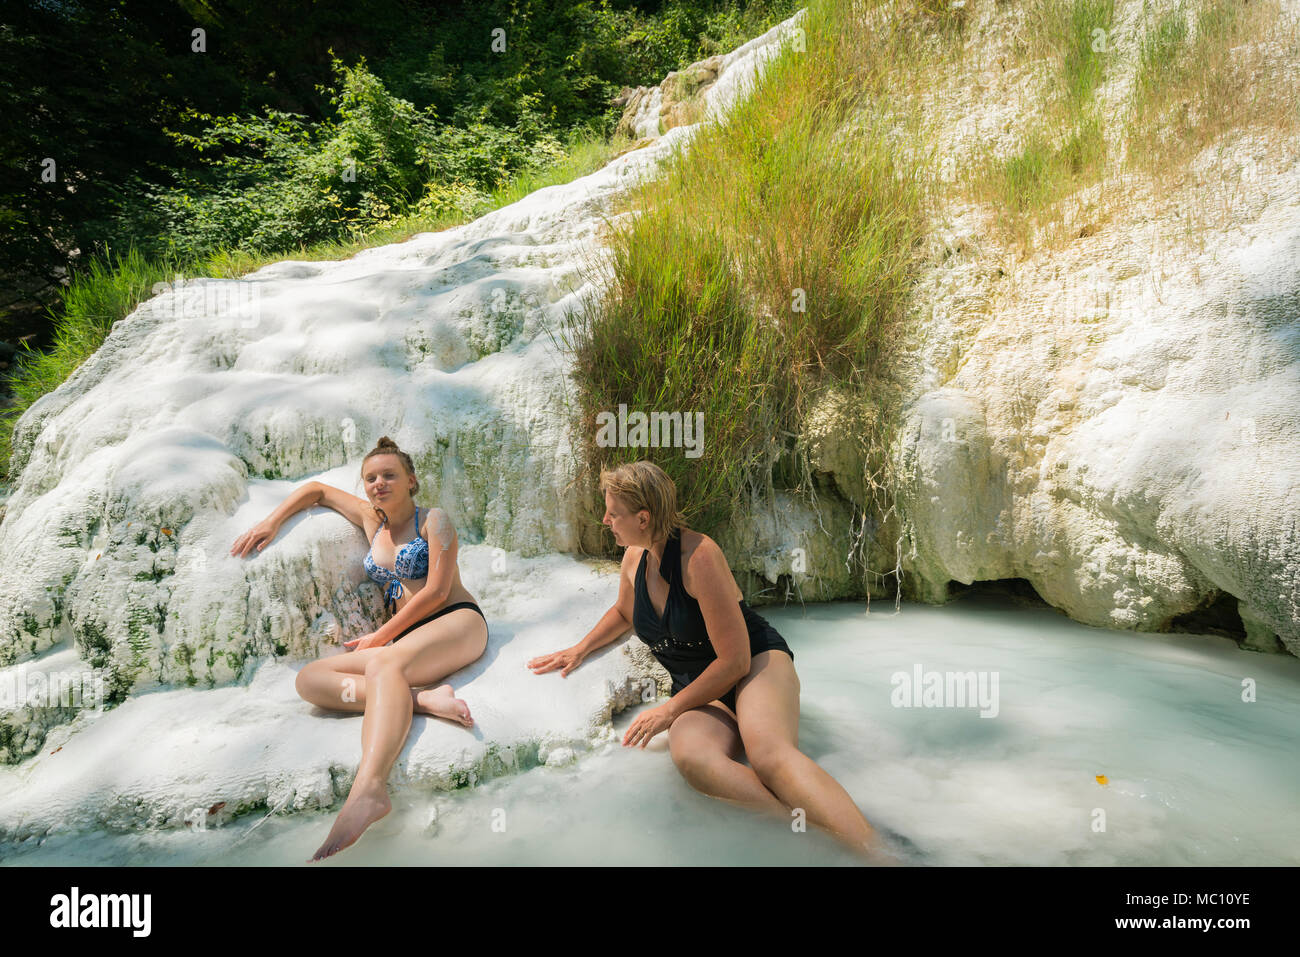 Zwei Frauen, die Fossa Bianca, weiße Wal, Calciumcarbonat Hot Springs und travertinbecken in Bagni San Filippo, der südlichen Toskana, Italien, Euro Stockfoto